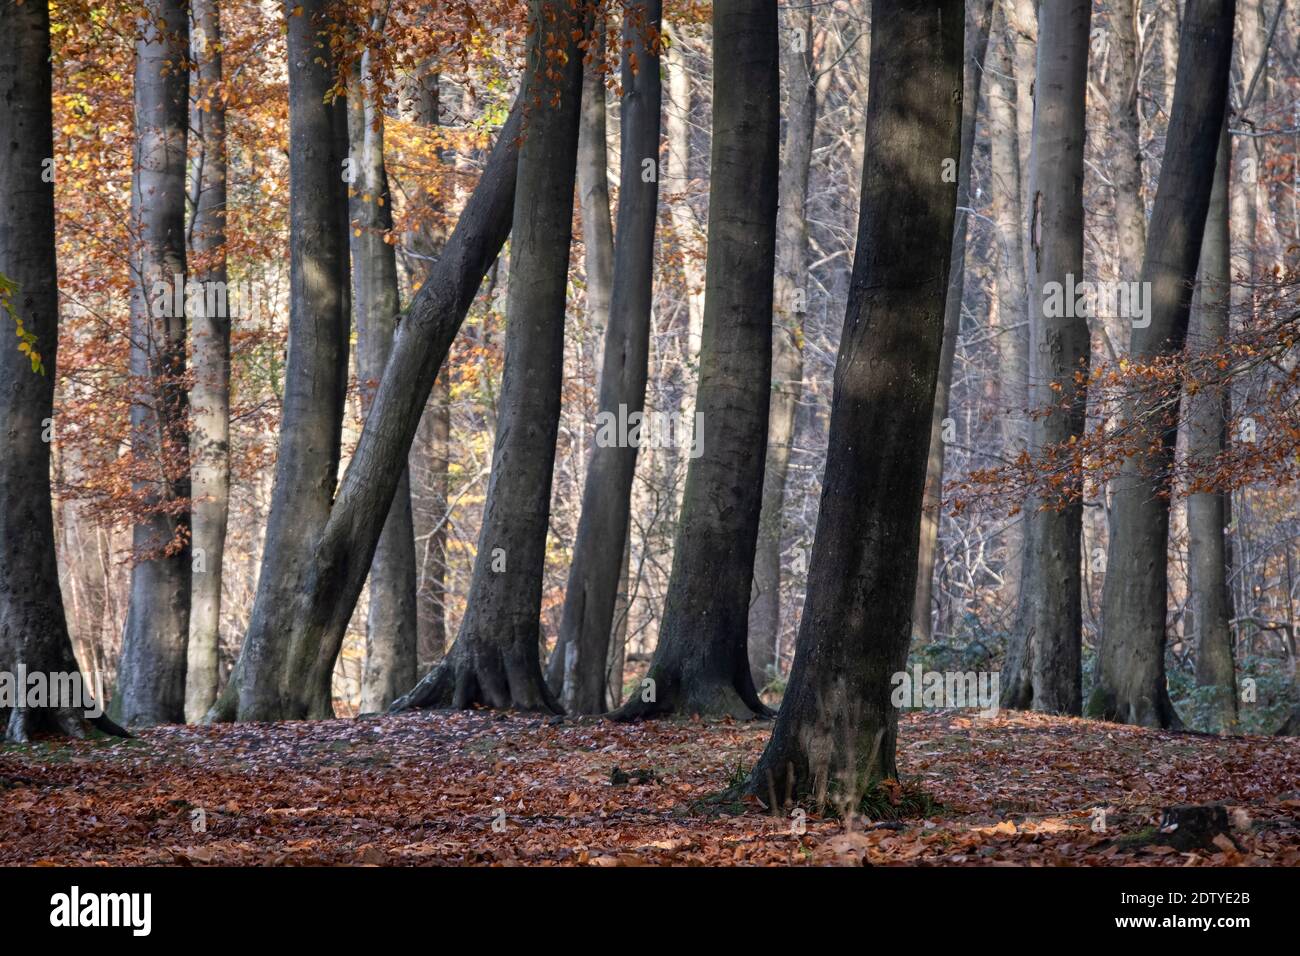 Los árboles de haya en el bosque de Delamere en otoño, el bosque de Delamere, Cheshire, Inglaterra, Reino Unido Foto de stock